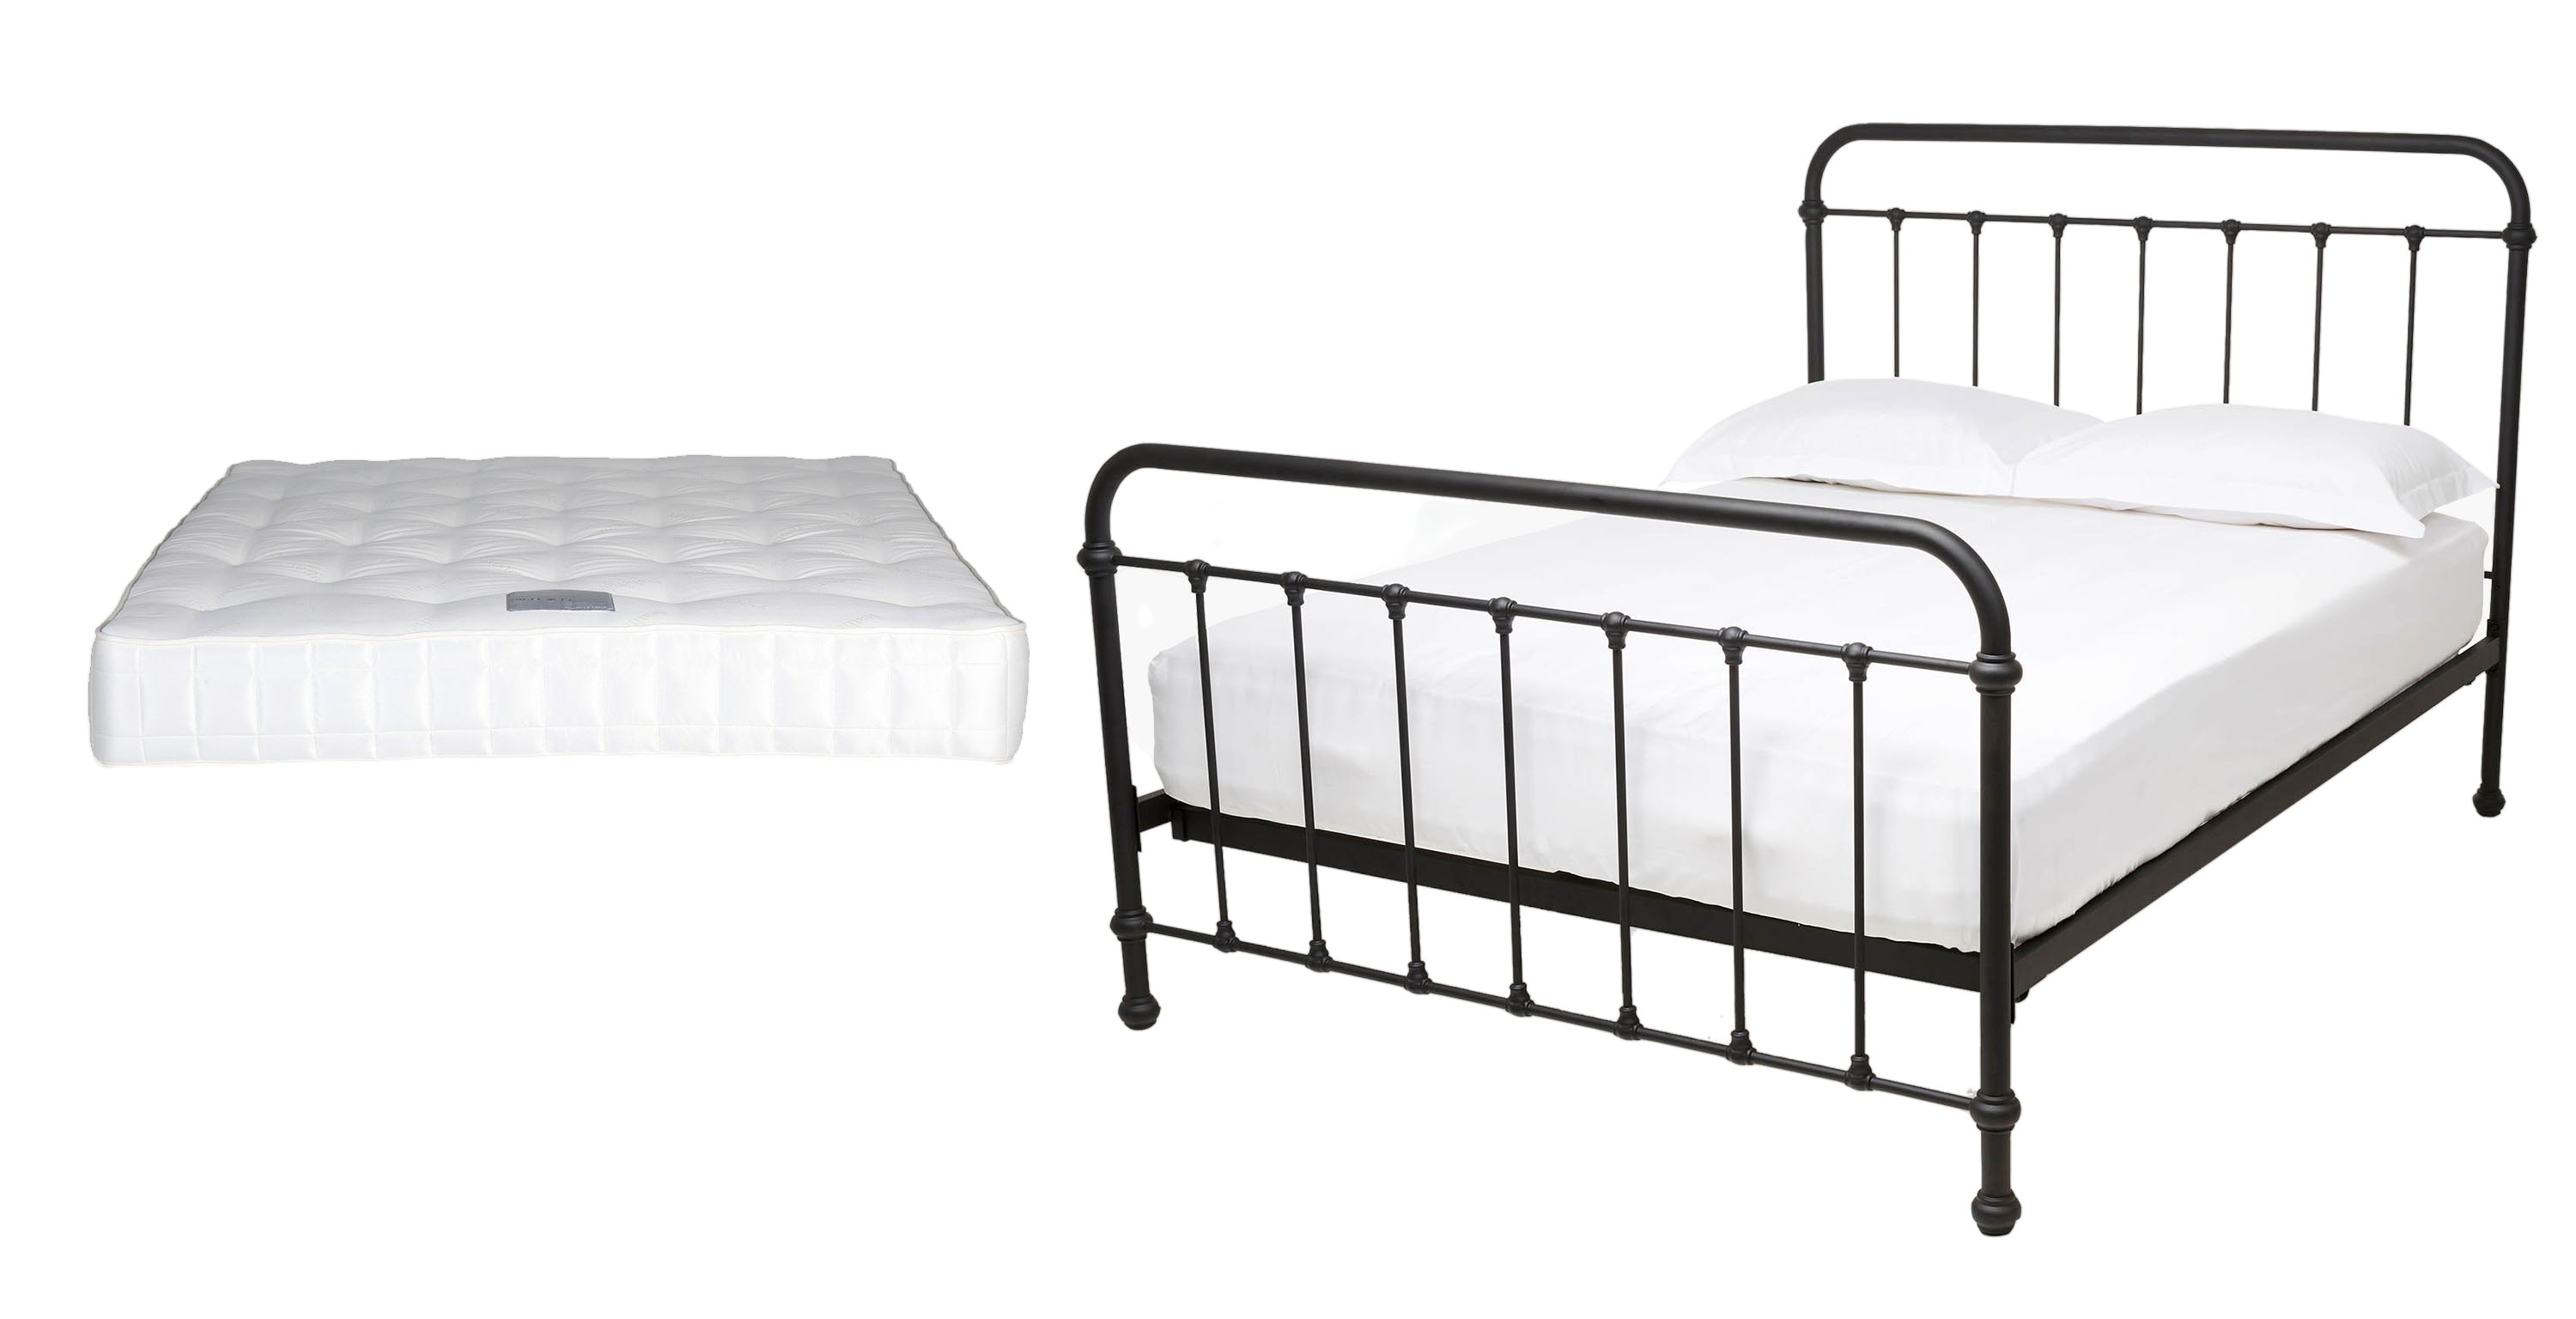 oliver & james mattress adjustable bed